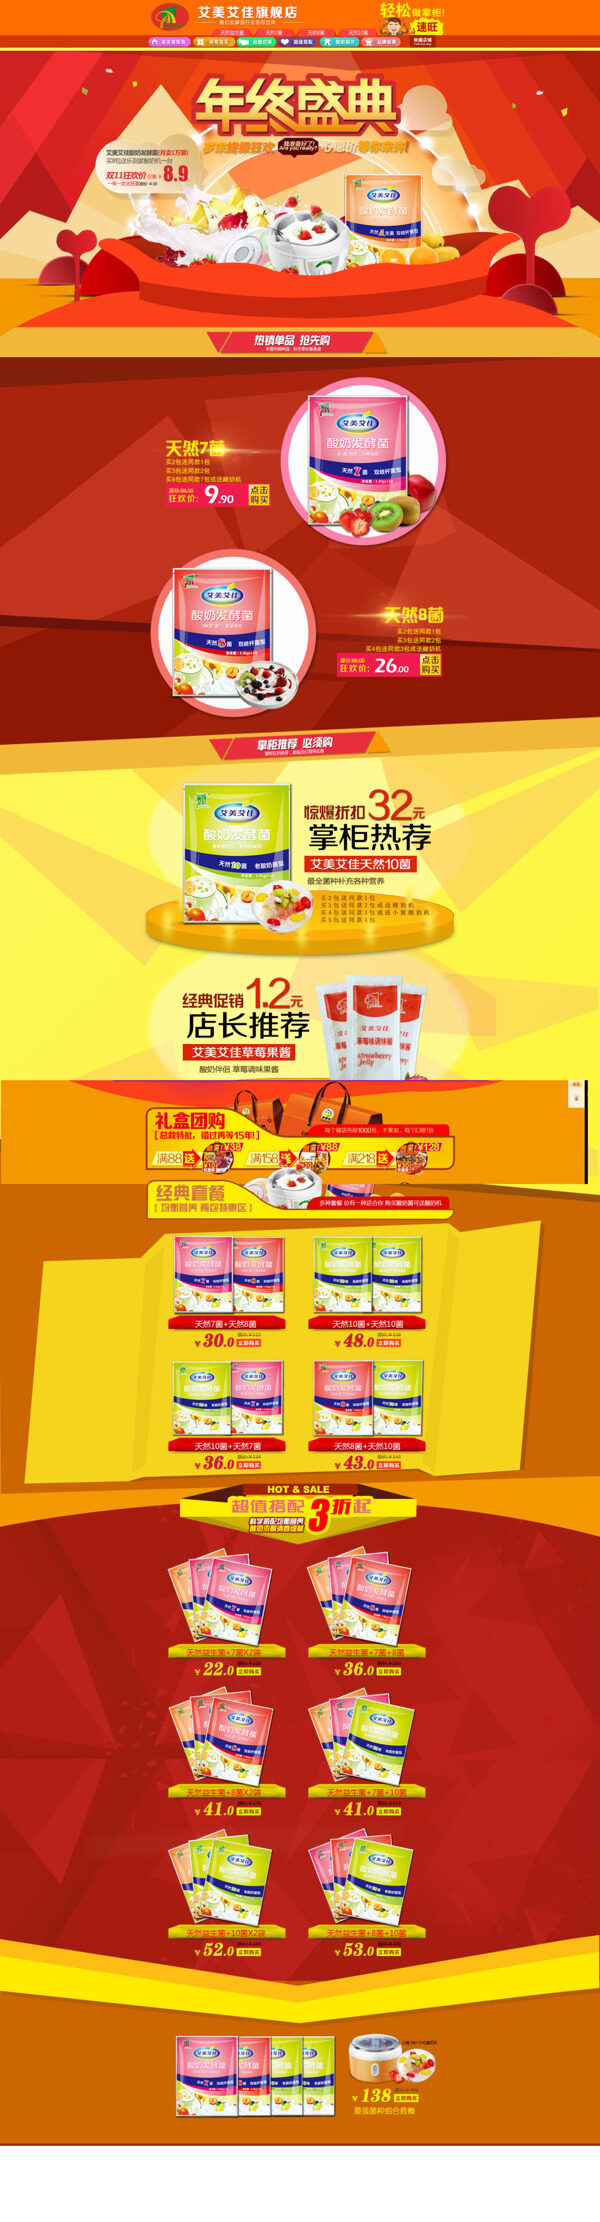 淘宝店铺自制酸奶海报模版